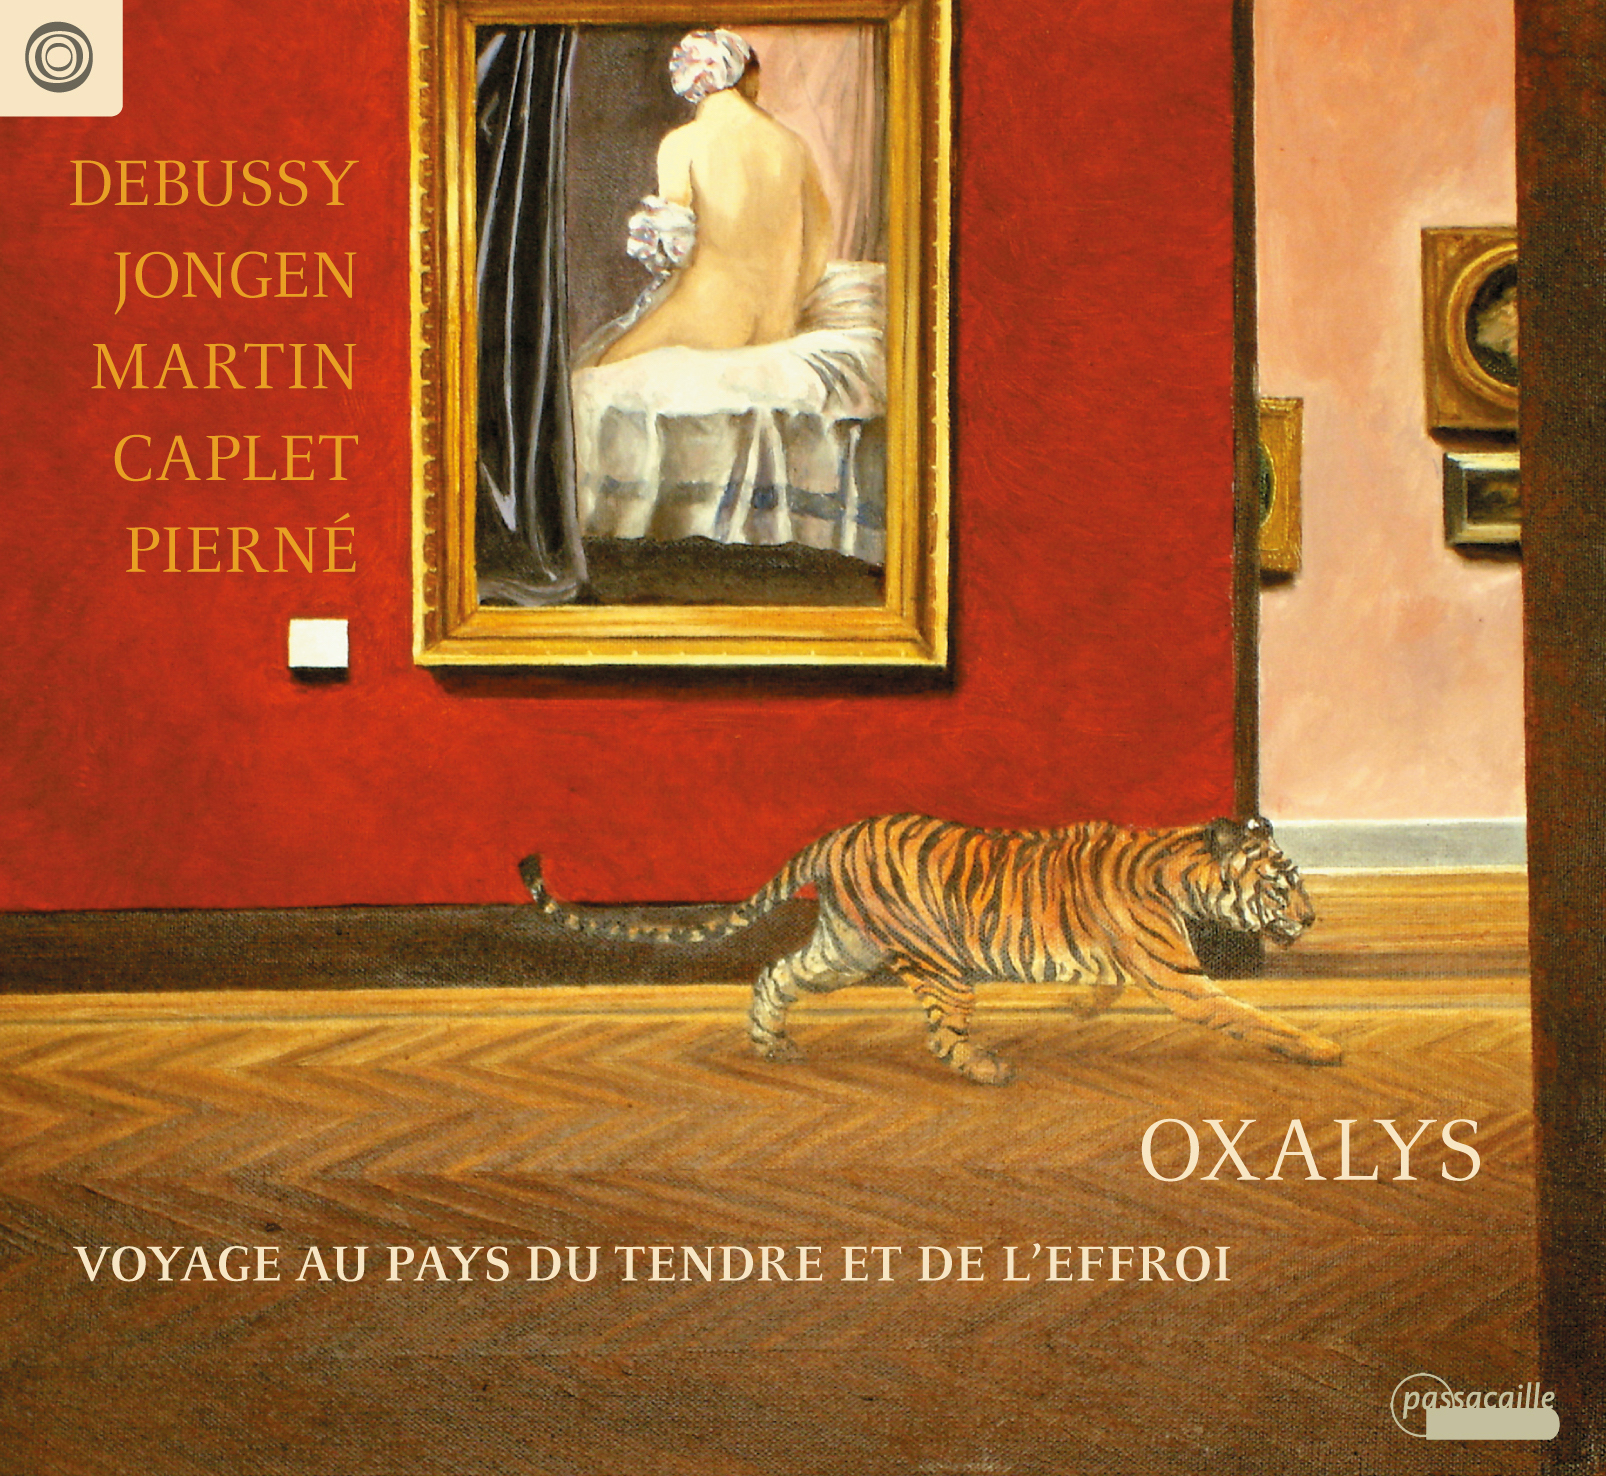 Debussy - Jongen - Martin - Caplet - Pierné - Voyage au pays du tendre et de l'effroi - Oxalys